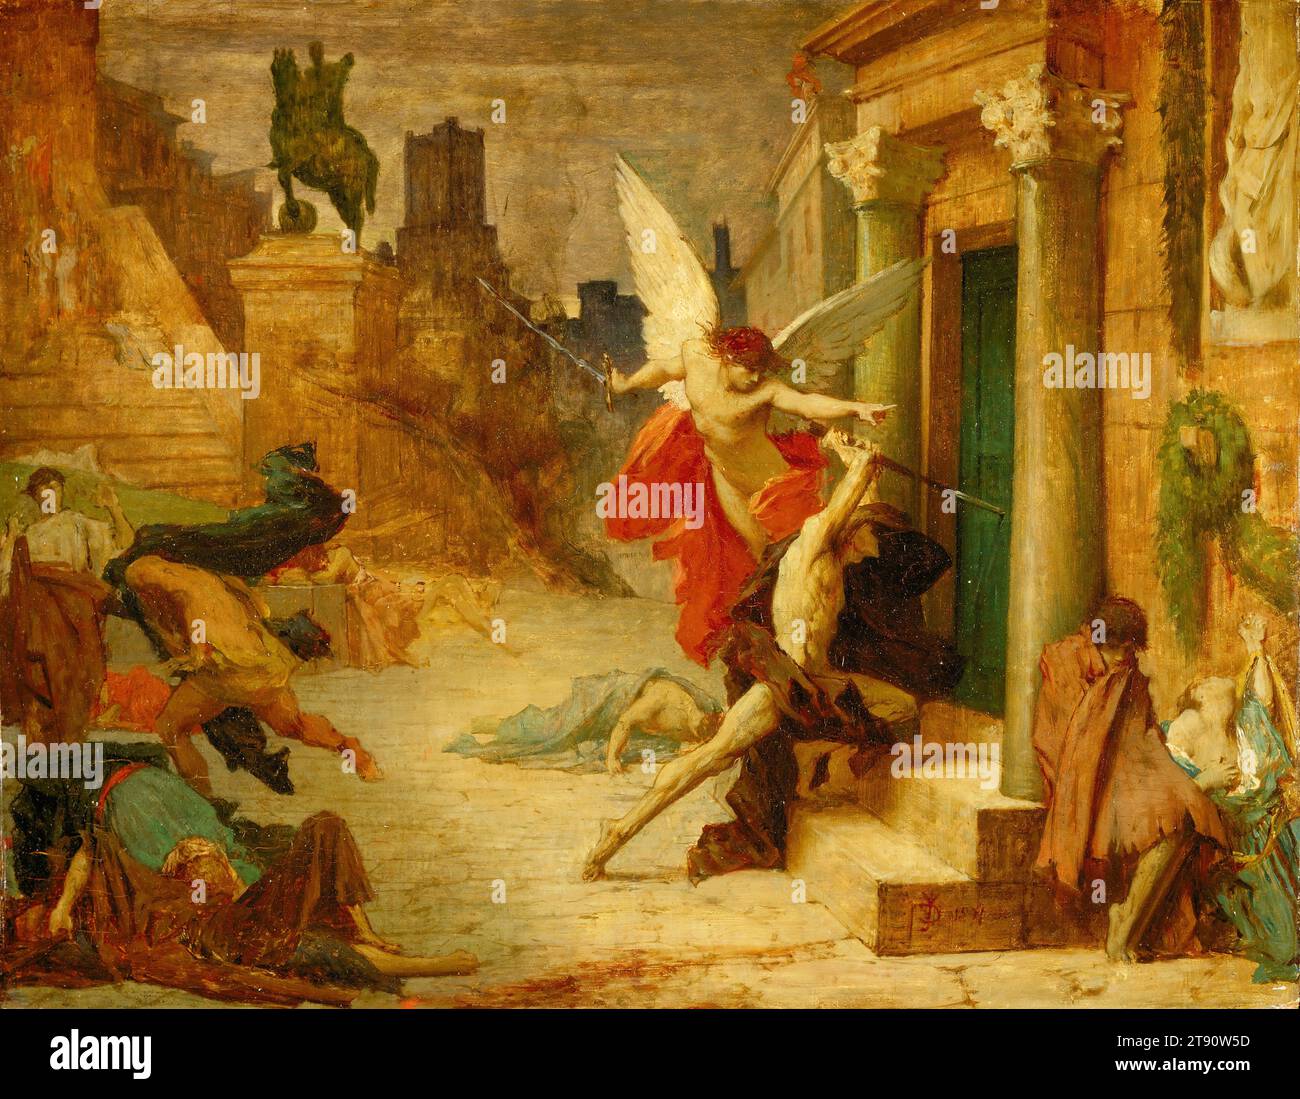 La peste à Rome, 1869, Jules Elie Delaunay, Français, 1828 - 1891, 14 7/16 x 18 1/16 po (36,67 x 45,88 cm) (toile)21 1/4 x 23 3/4 x 2 1/4 po (53,98 x 60,33 x 5,72 cm) (cadre extérieur), huile sur bois, France, 19e siècle, il s'agit probablement d'une étude pour le tableau le plus célèbre de Delaunay, une grande toile qu'il a exposée en 1869, mais qui a eu sa genèse pendant la période d'études de Delaunay à Rome (1856-61). L'artiste s'est inspiré d'un passage de la Légende dorée du 13e siècle de Jacobus de Voragine, qui décrit comment la vengeance divine a apporté un fléau à Rome. Dans le tableau, figures frappées par la peste Banque D'Images